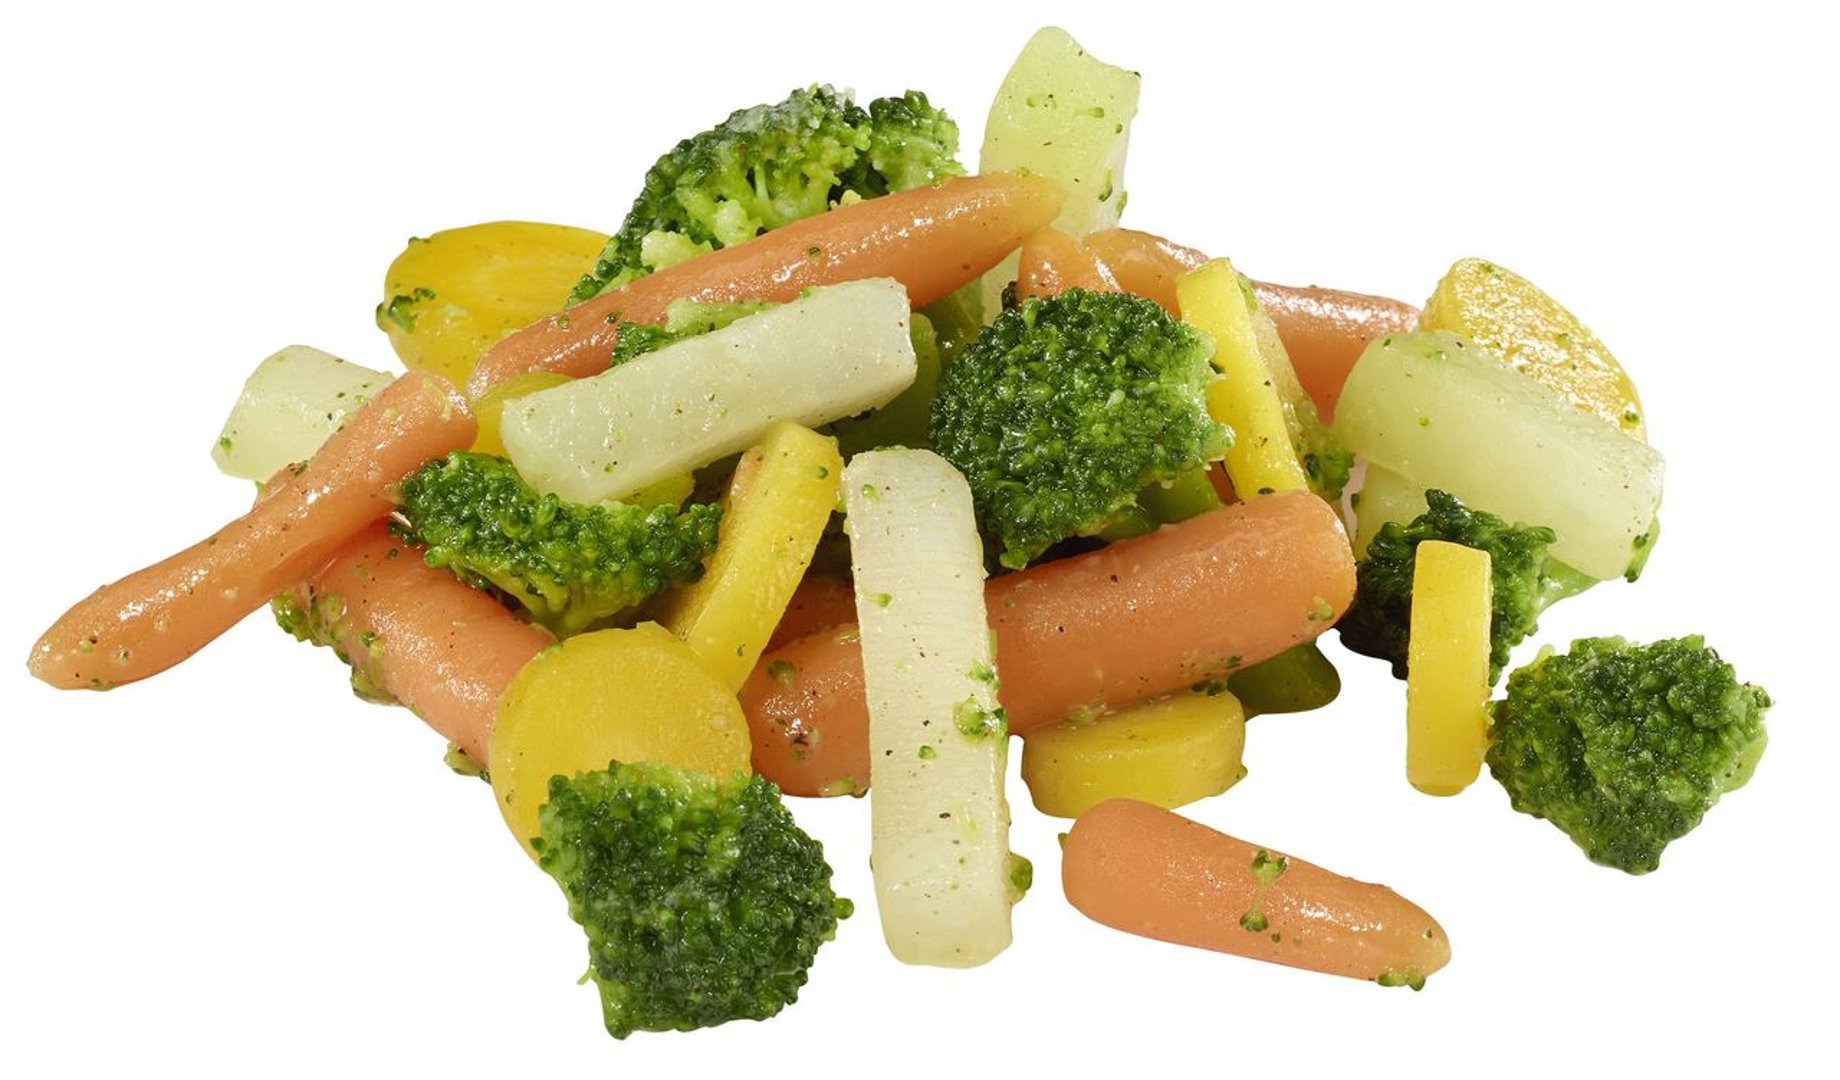 Frosta - Sommergarten Pfannengemüse vorgegart, vegan, Mischung aus kleinen Fingermöhren, gelben Karottenscheiben, Kolrabistreifen und Broccoliröschen in feiner Sauce 1,5 kg Beutel